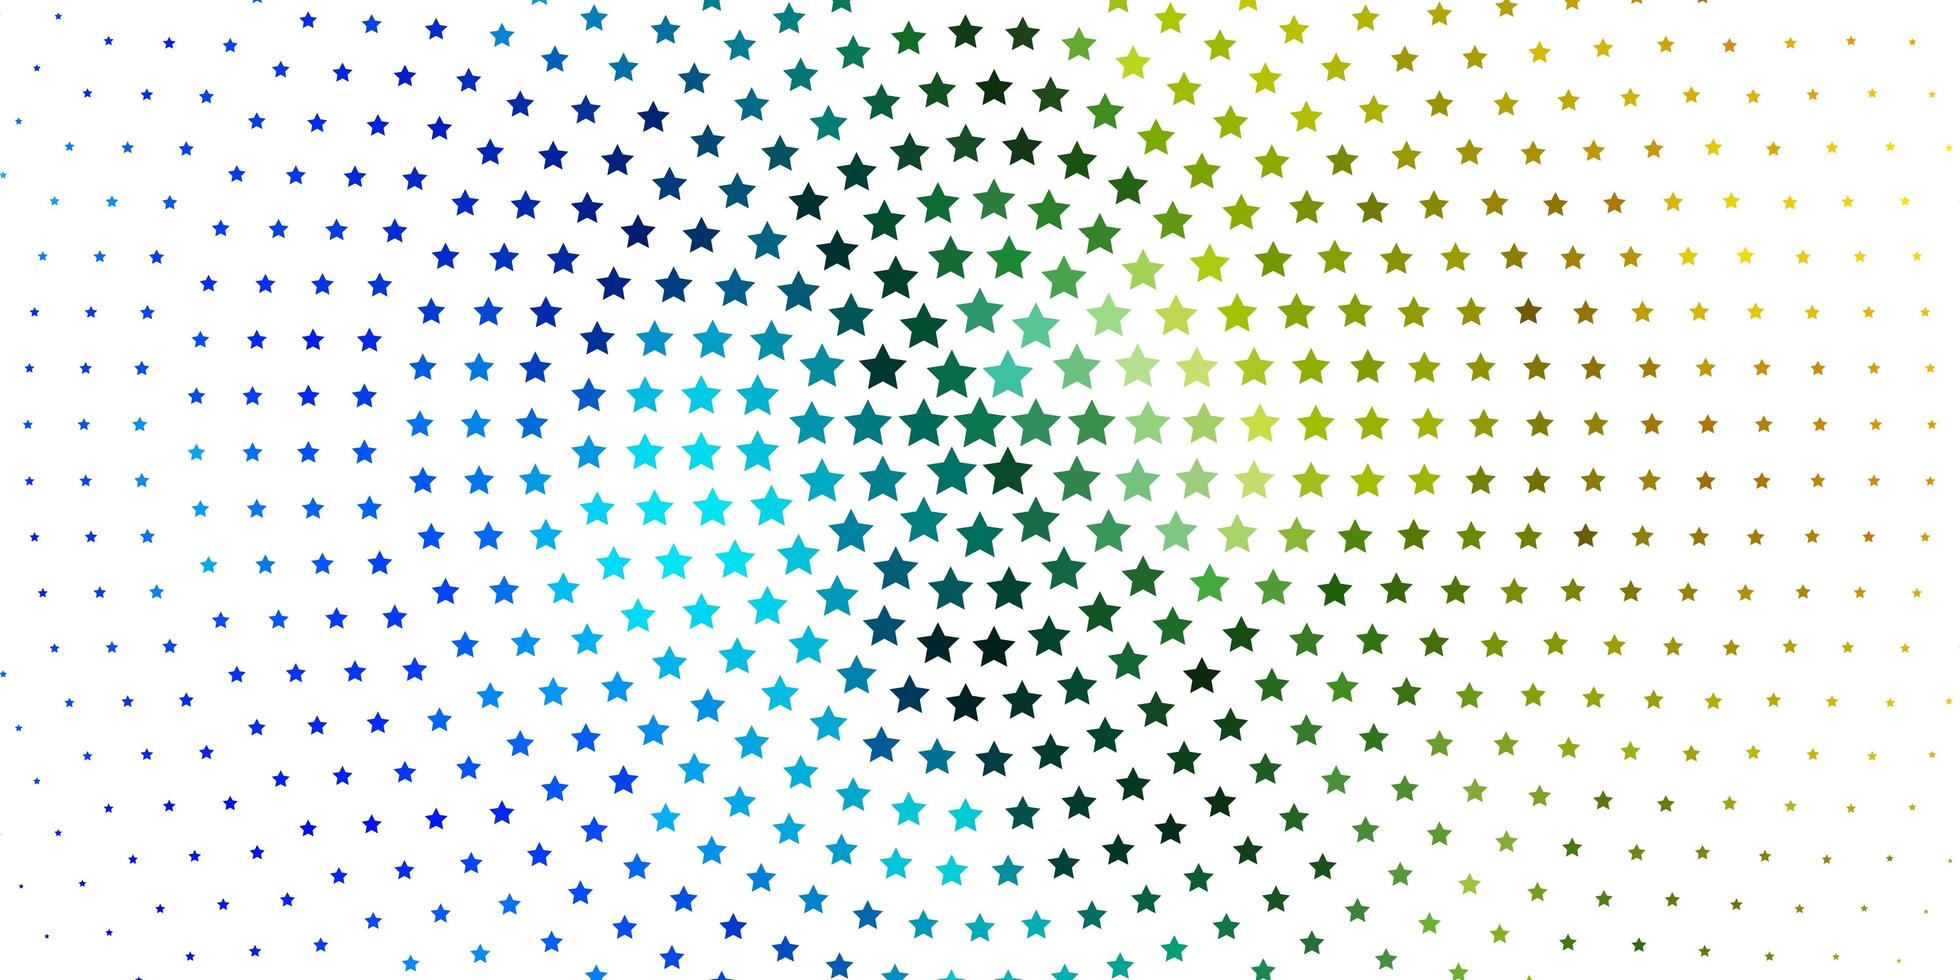 licht blauw groen vector sjabloon met neon sterren moderne geometrische abstracte illustratie met sterren ontwerp voor uw zakelijke promotie